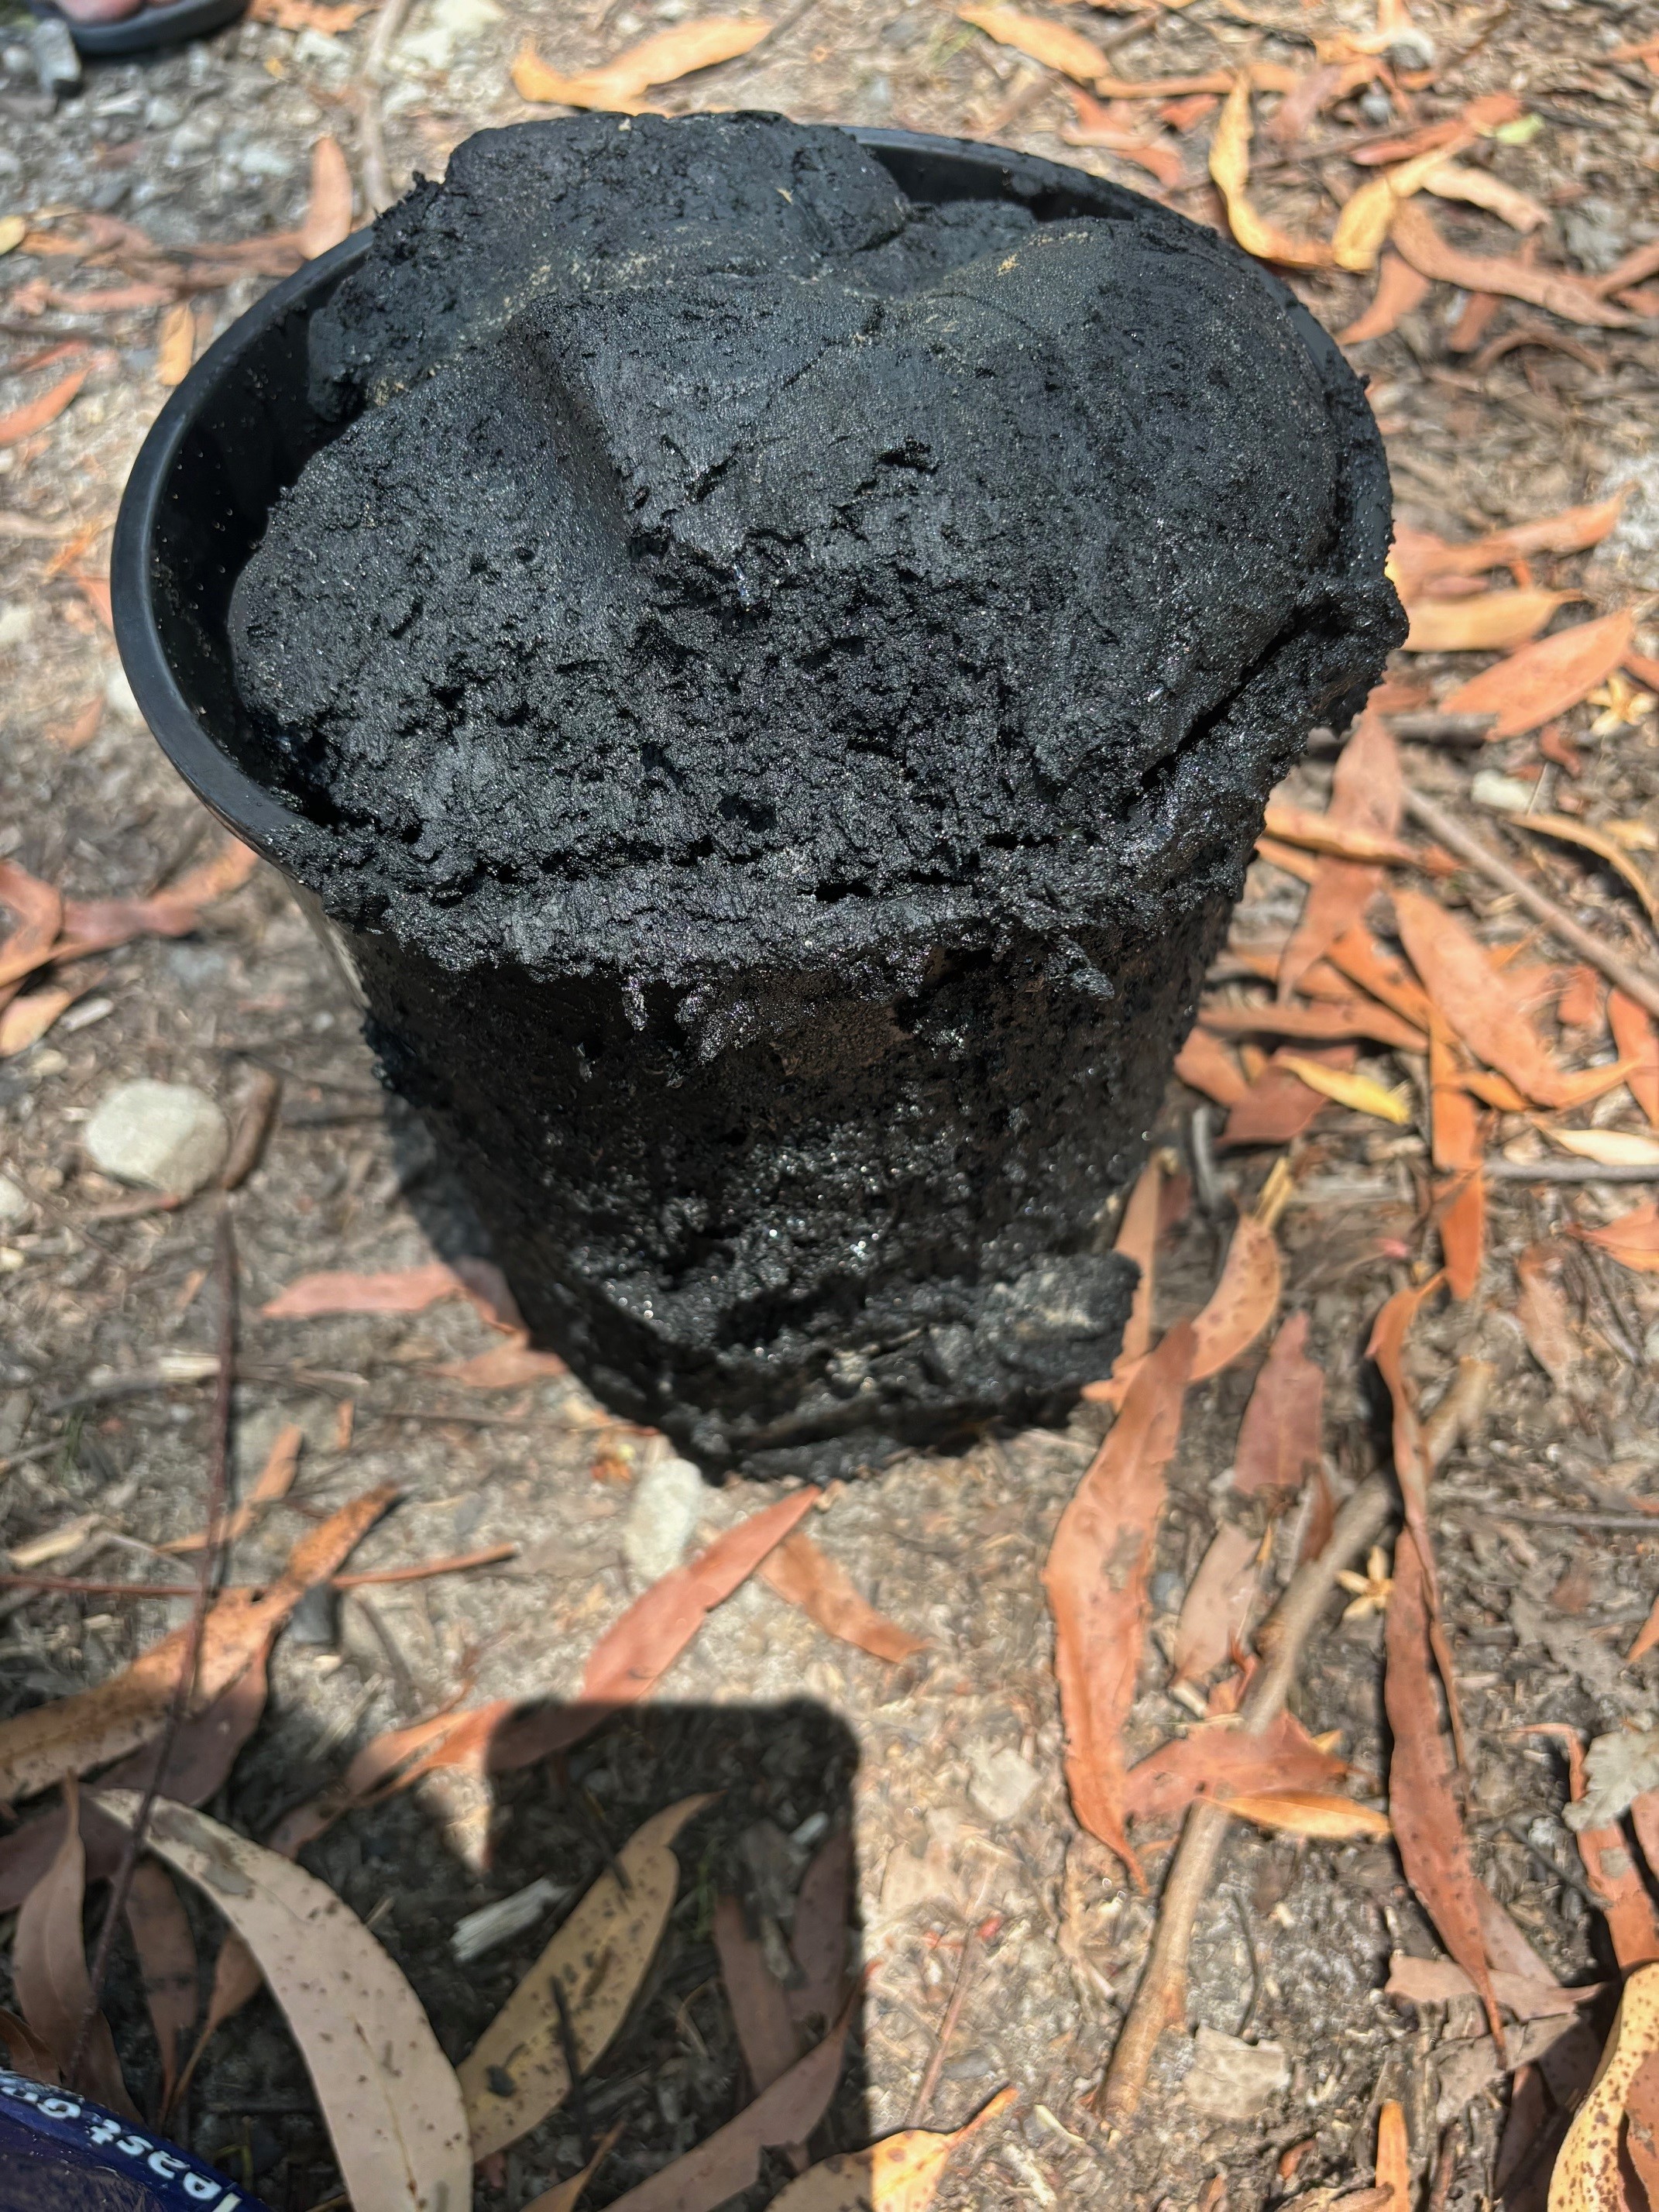 A big bucket overflowing with black greasy sludge